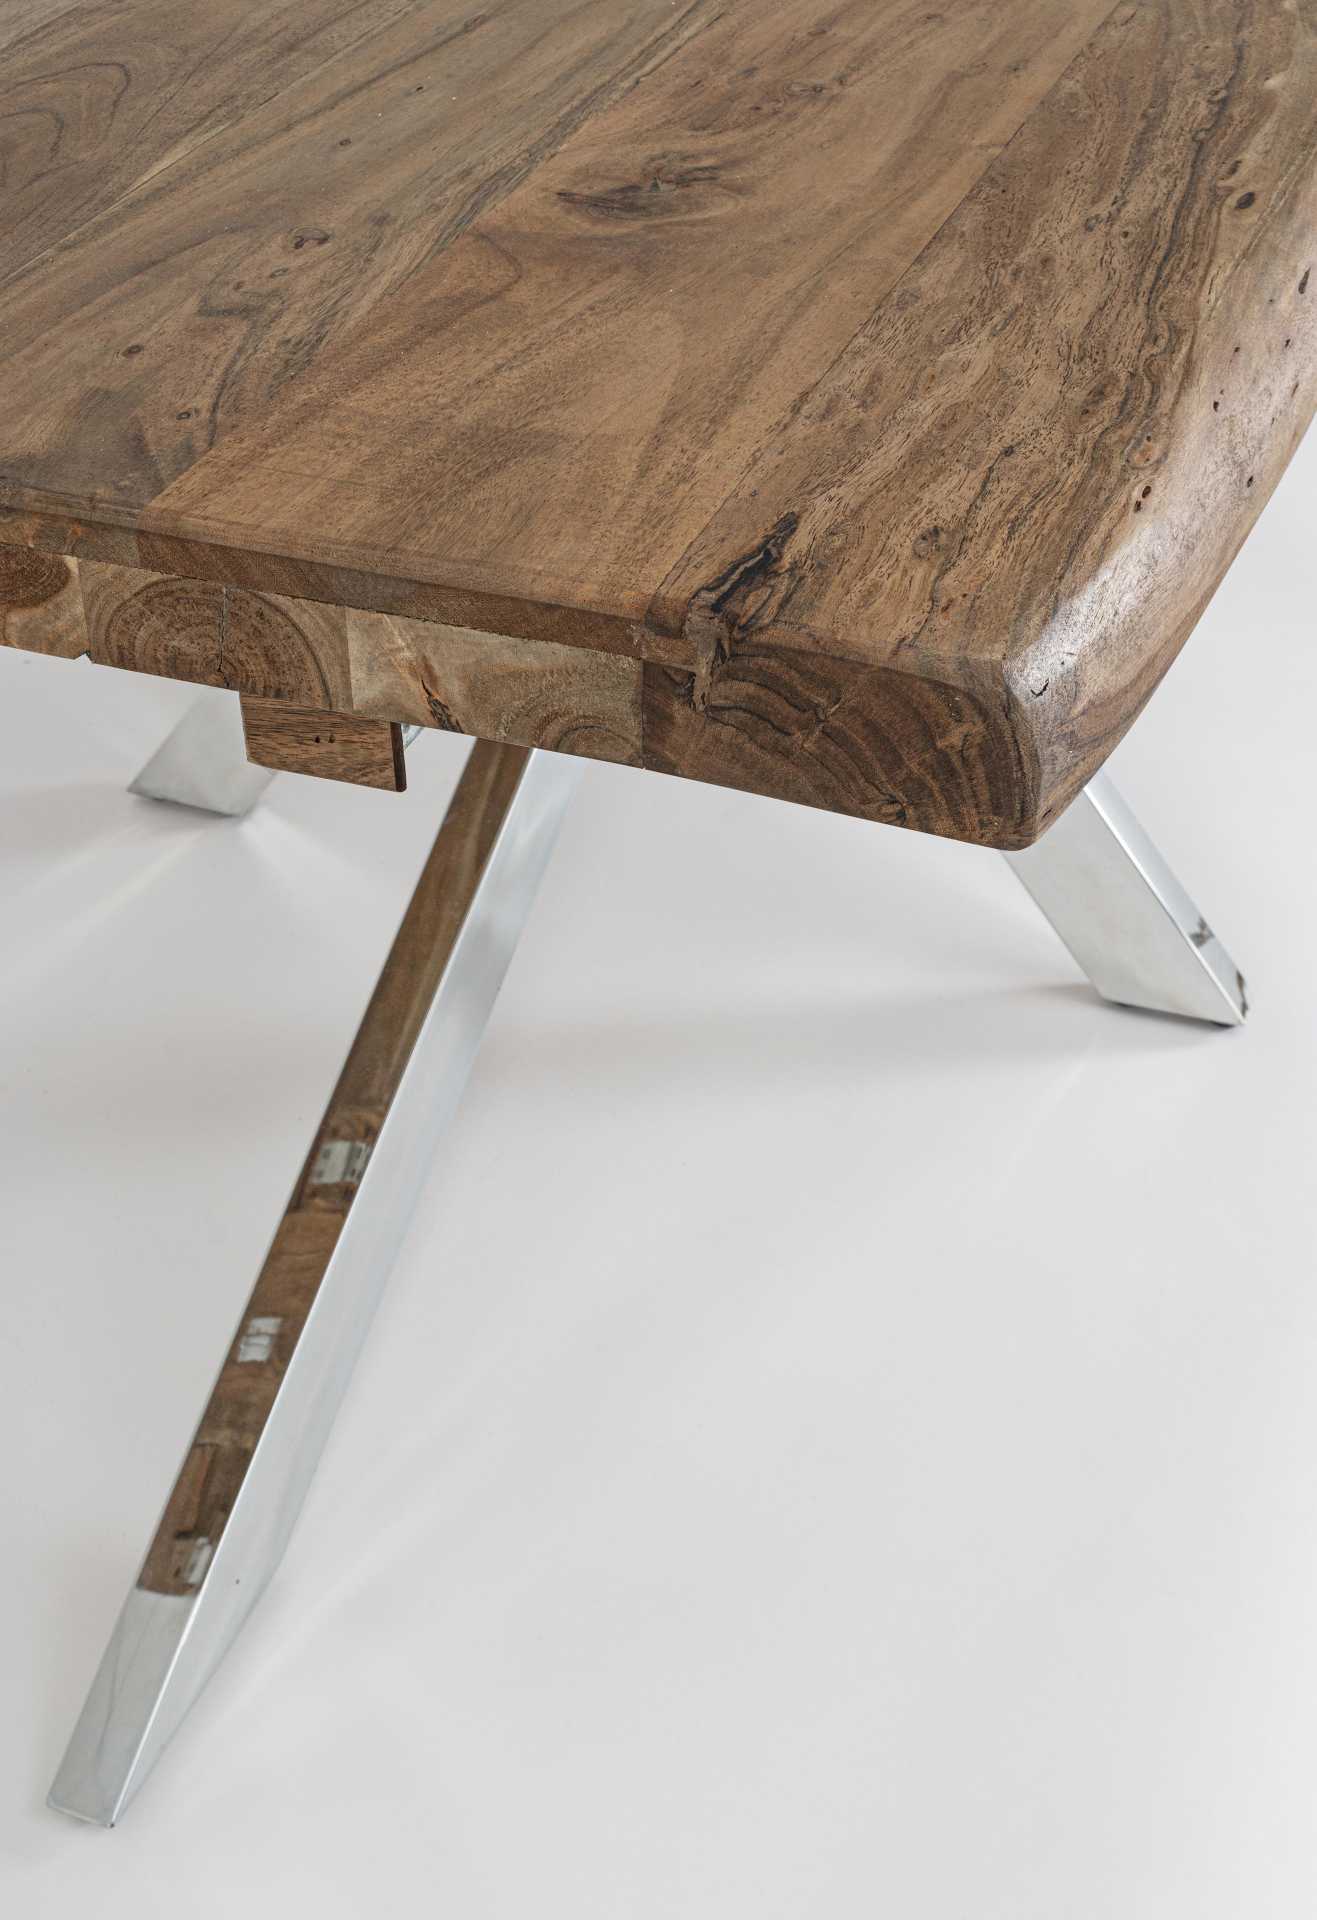 Der Esstisch Arkansas überzeugt mit seinem modernem Design. Gefertigt wurde er aus Akazienholz, welches einen natürlichen Farbton besitzt. Das Gestell ist aus Metall und hat einen silbernen Farbton. Der Tisch ist ausziehbar von einer Länge von 180 cm auf 